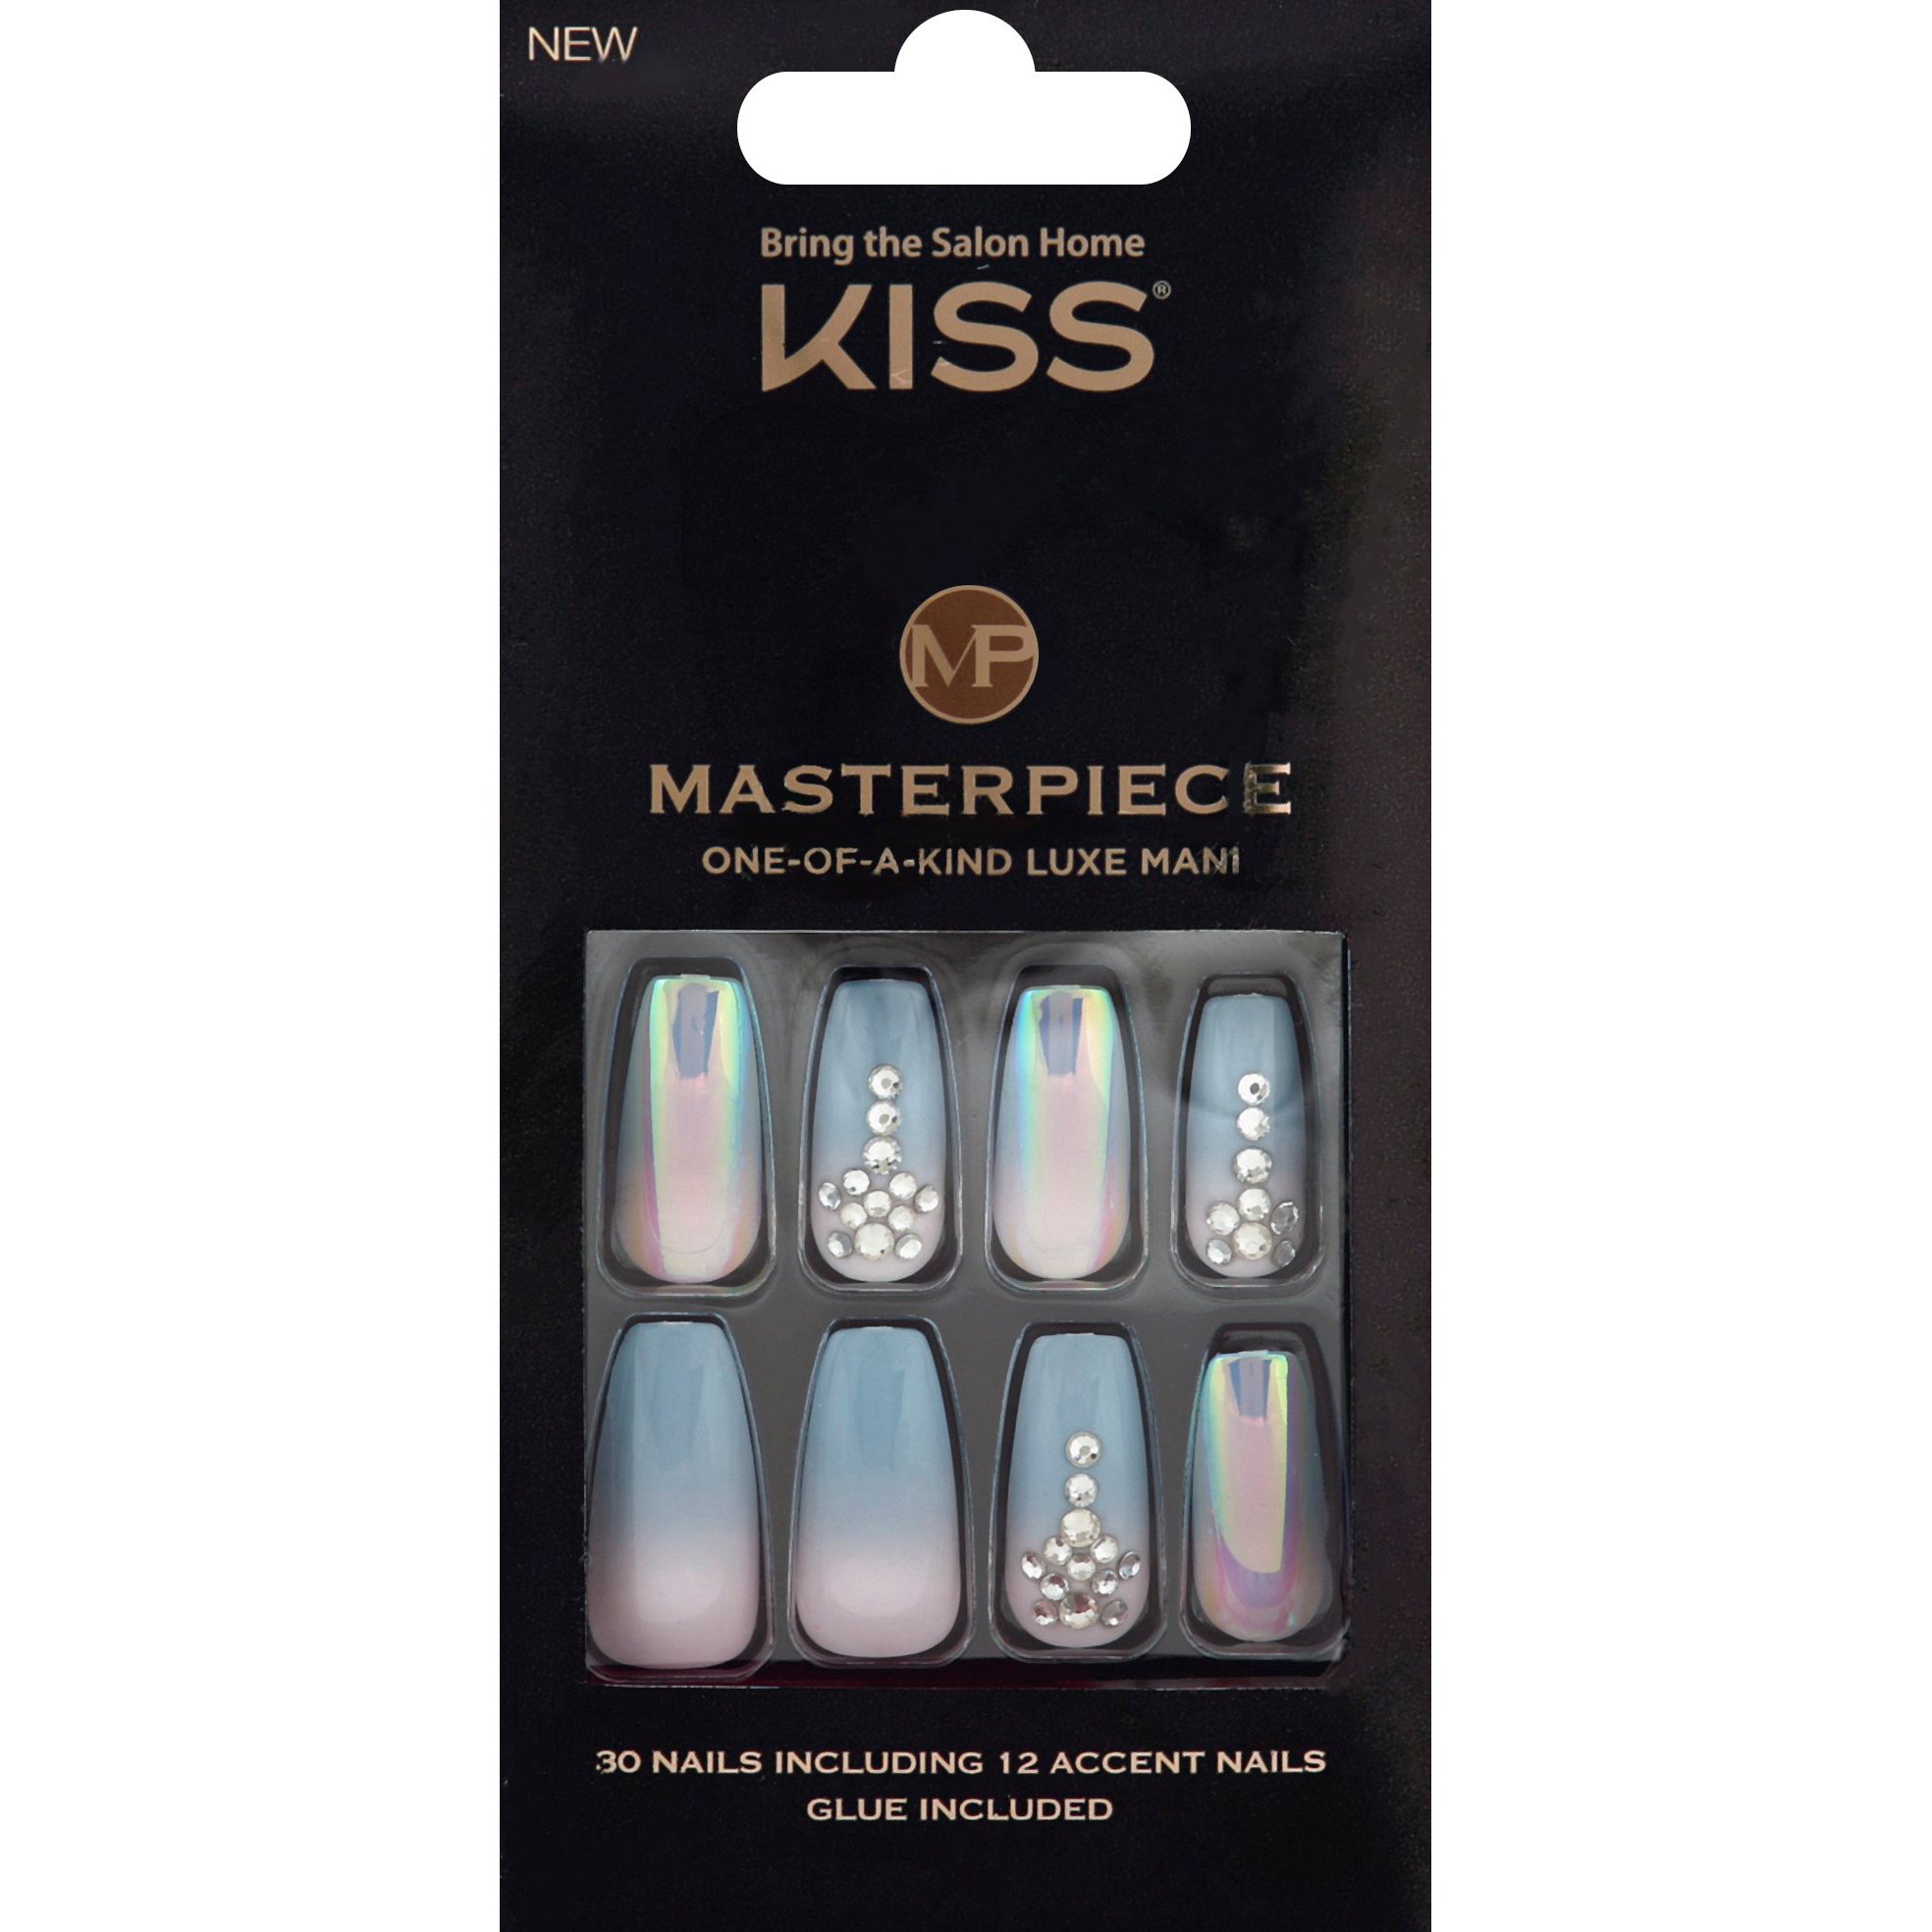 Kiss Masterpiece Nails Hot Like Fire Long Length - Shop Nail Sets at H-E-B